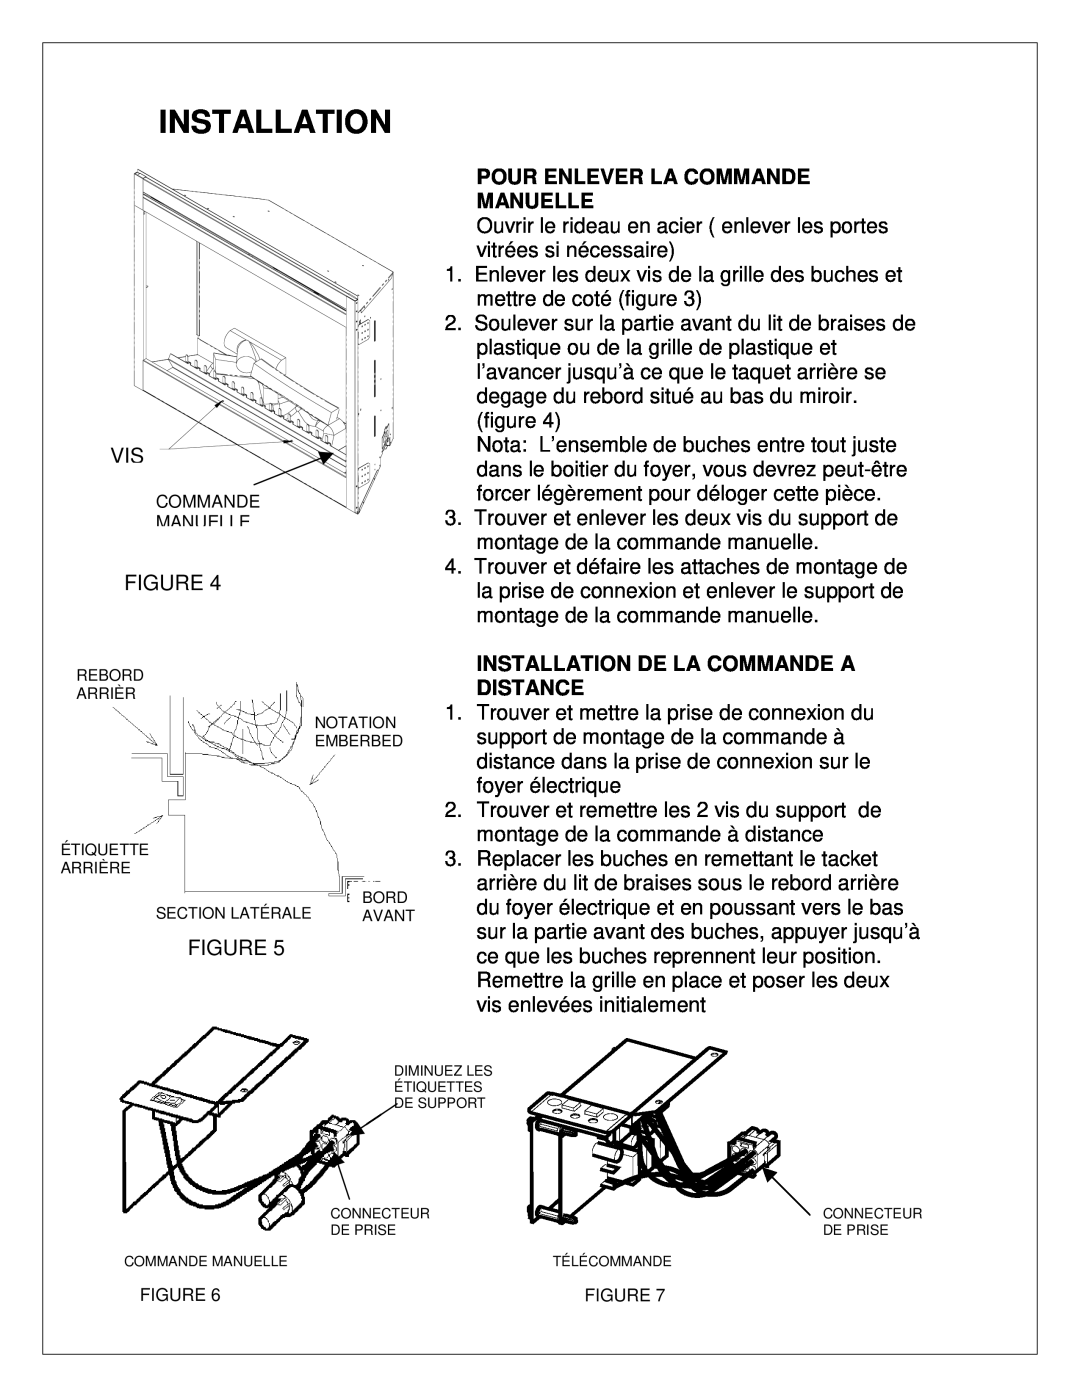 Dimplex 7206620100R02 manual Pour Enlever La Commande Manuelle, Installation De La Commande A Distance 